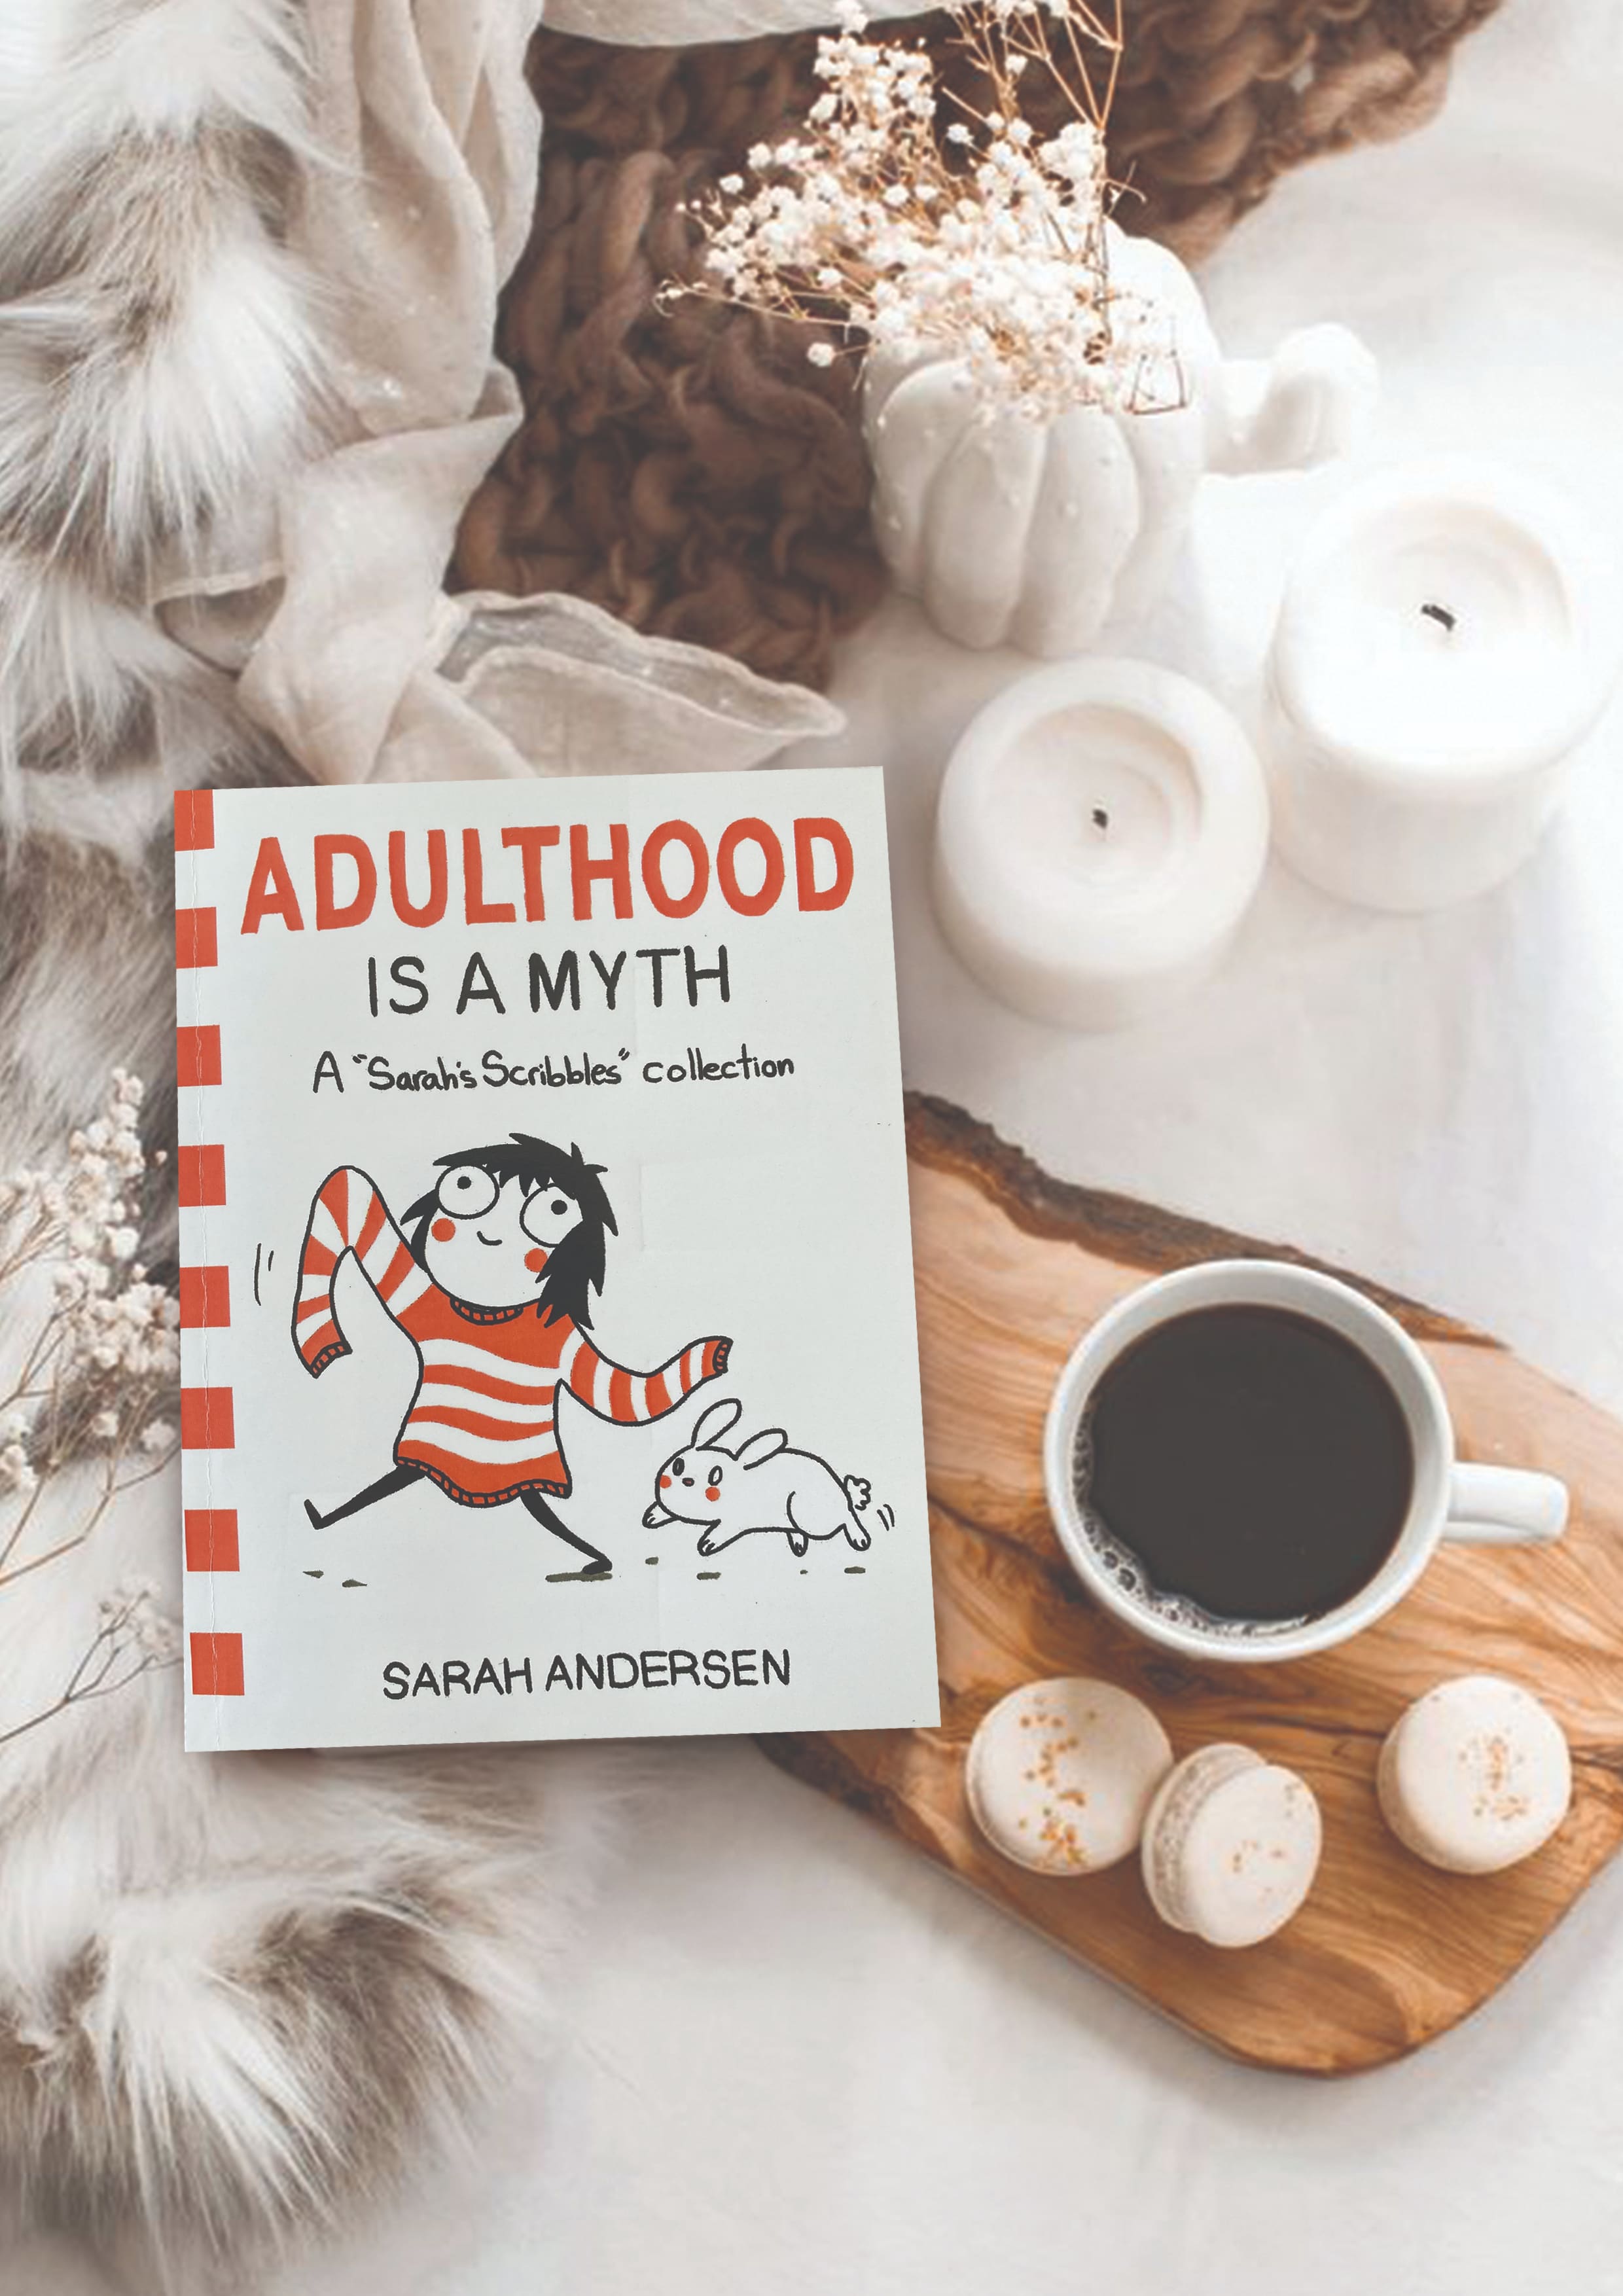 Adulthood is a MYTH